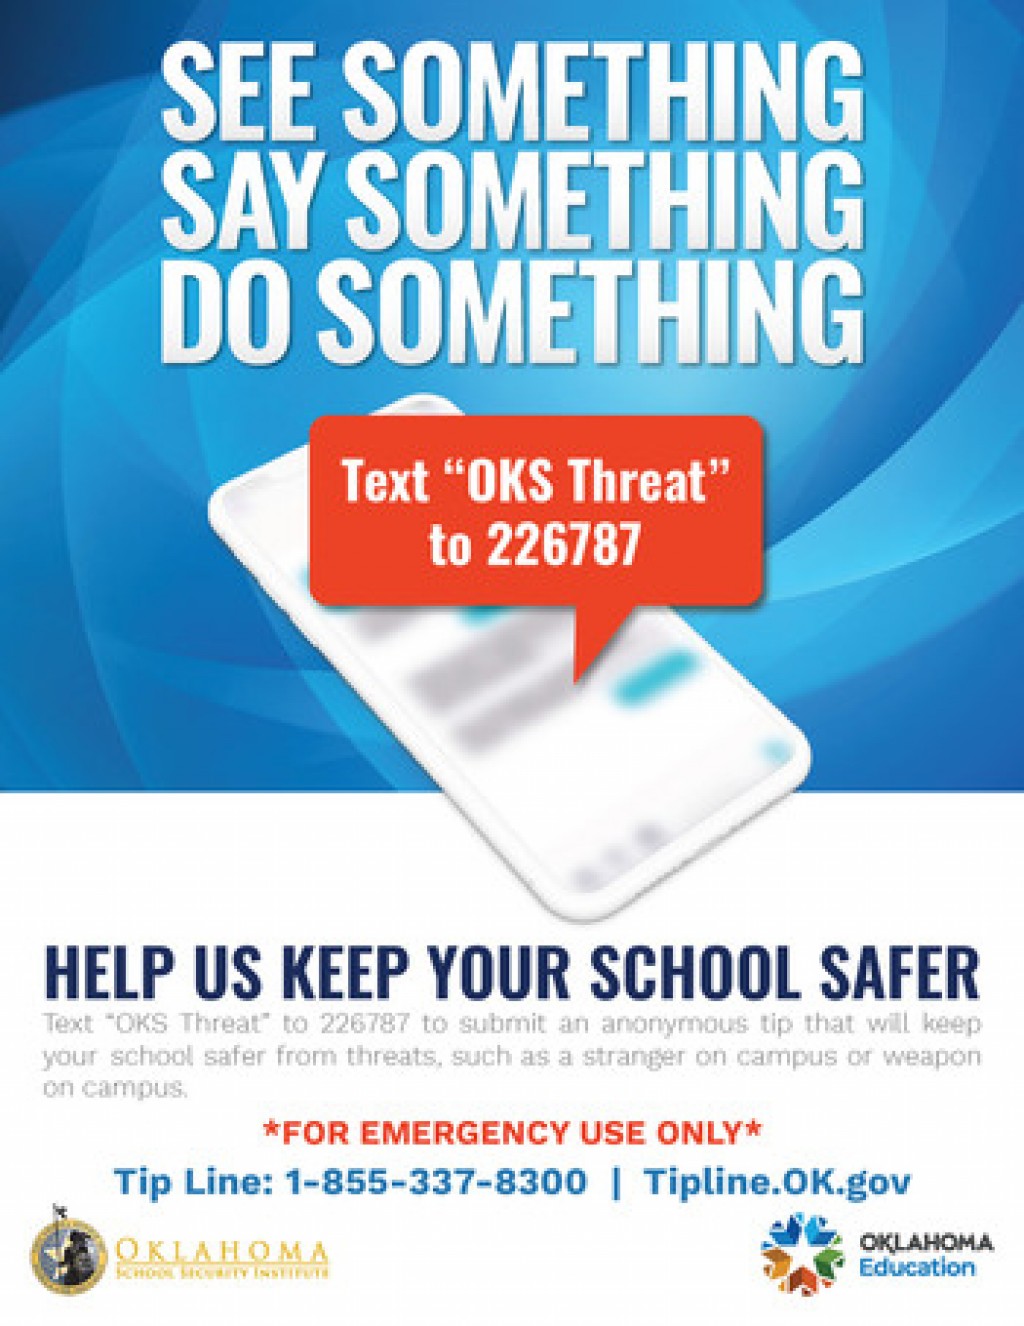 Nueva Tecnología permite que las amenazas Escolares sean reportadas por Texto